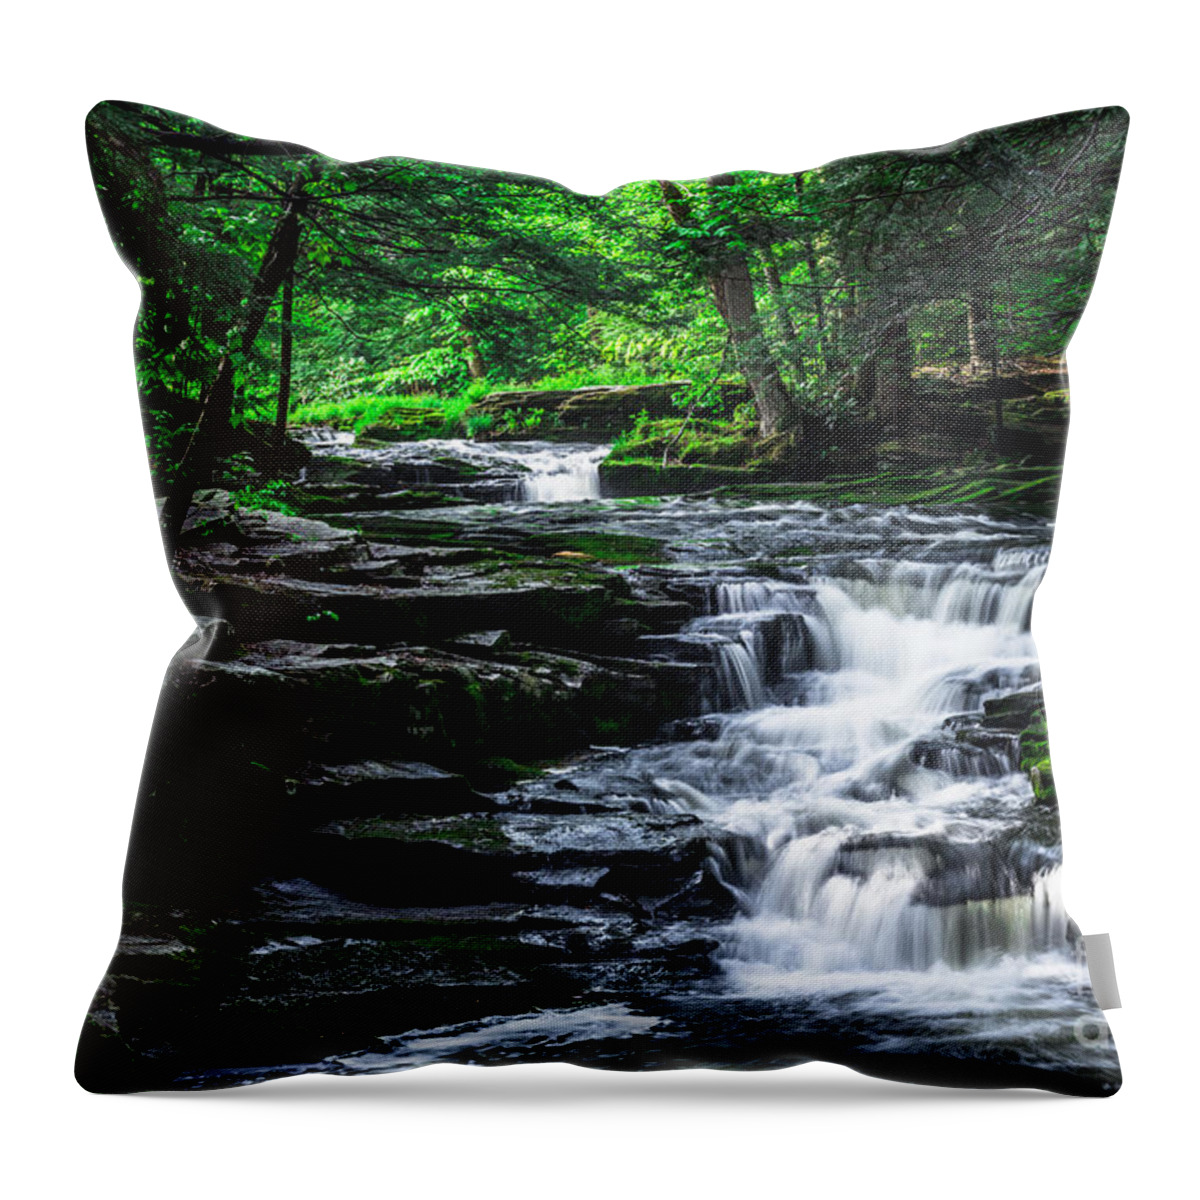 Little Falls Throw Pillow featuring the photograph Little Falls by David Rucker